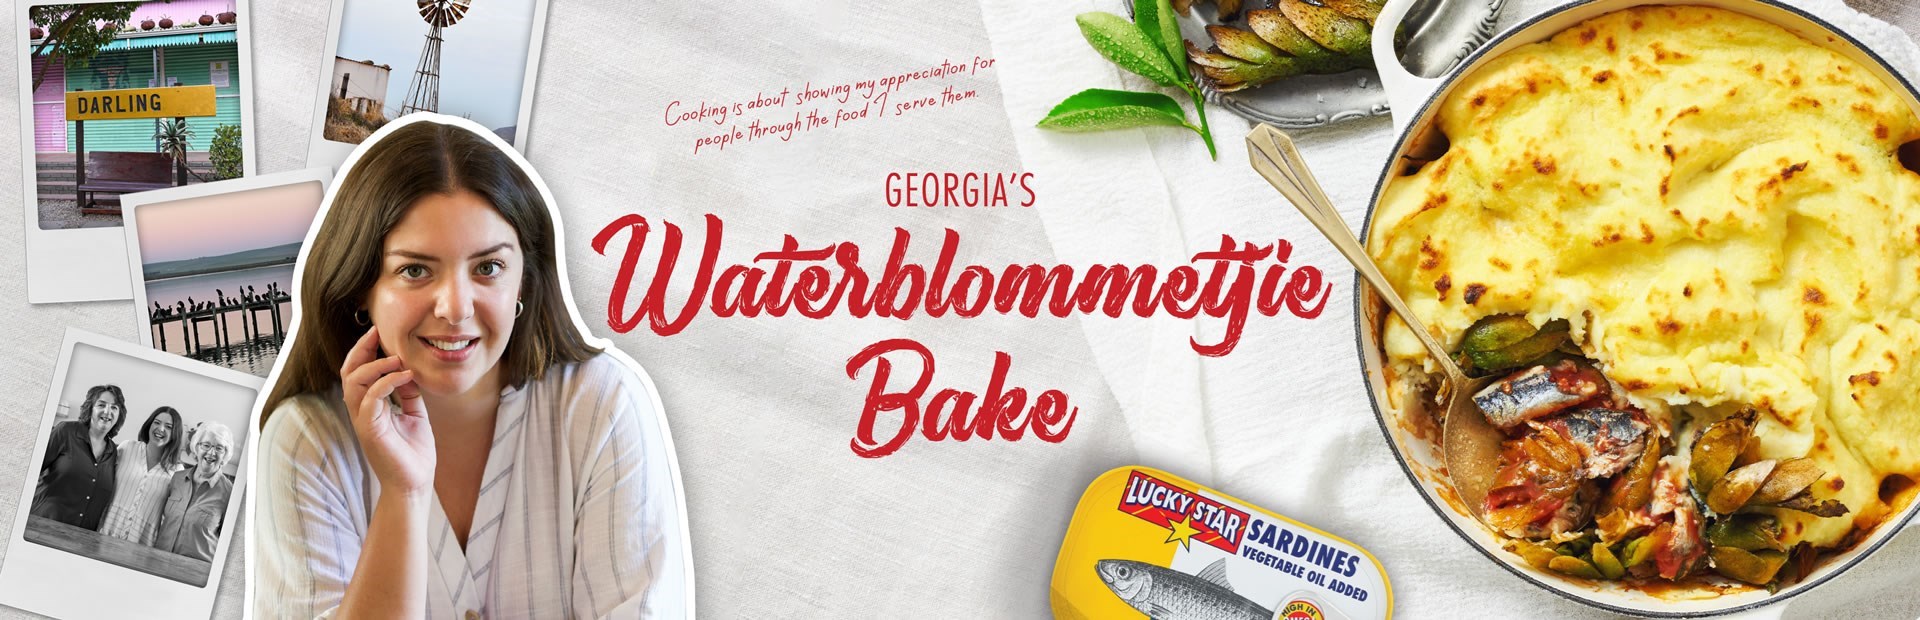 GEORGIA’S Waterblommetjie Bake